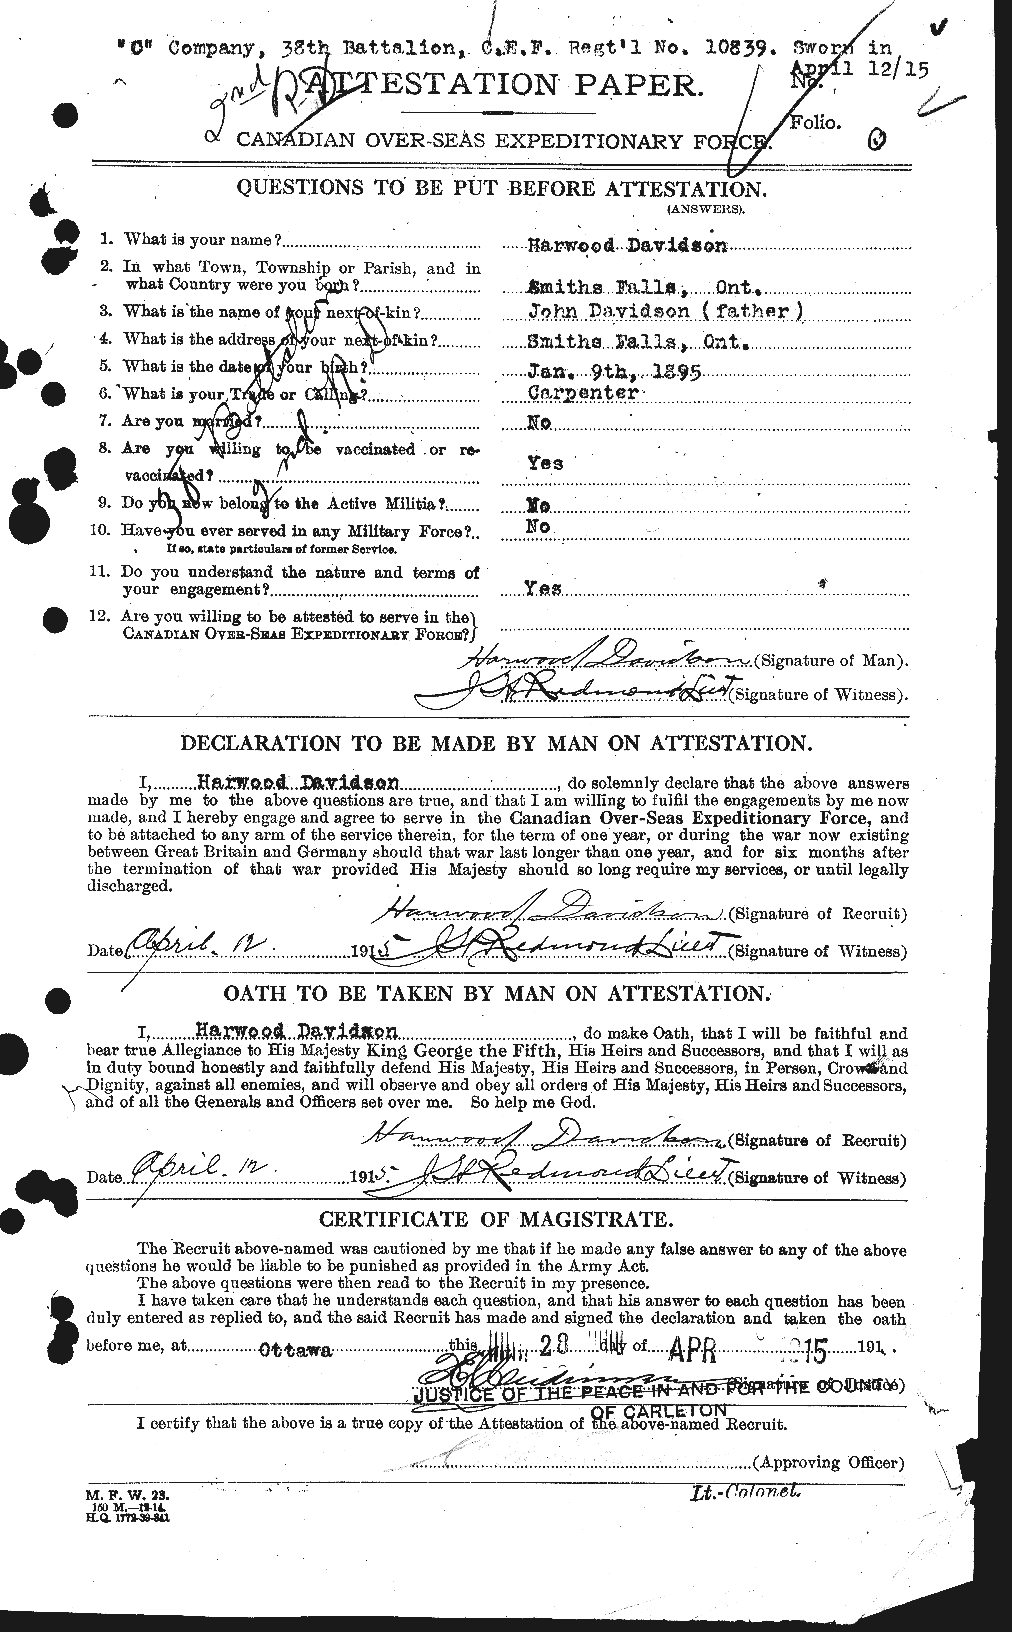 Dossiers du Personnel de la Première Guerre mondiale - CEC 281189a